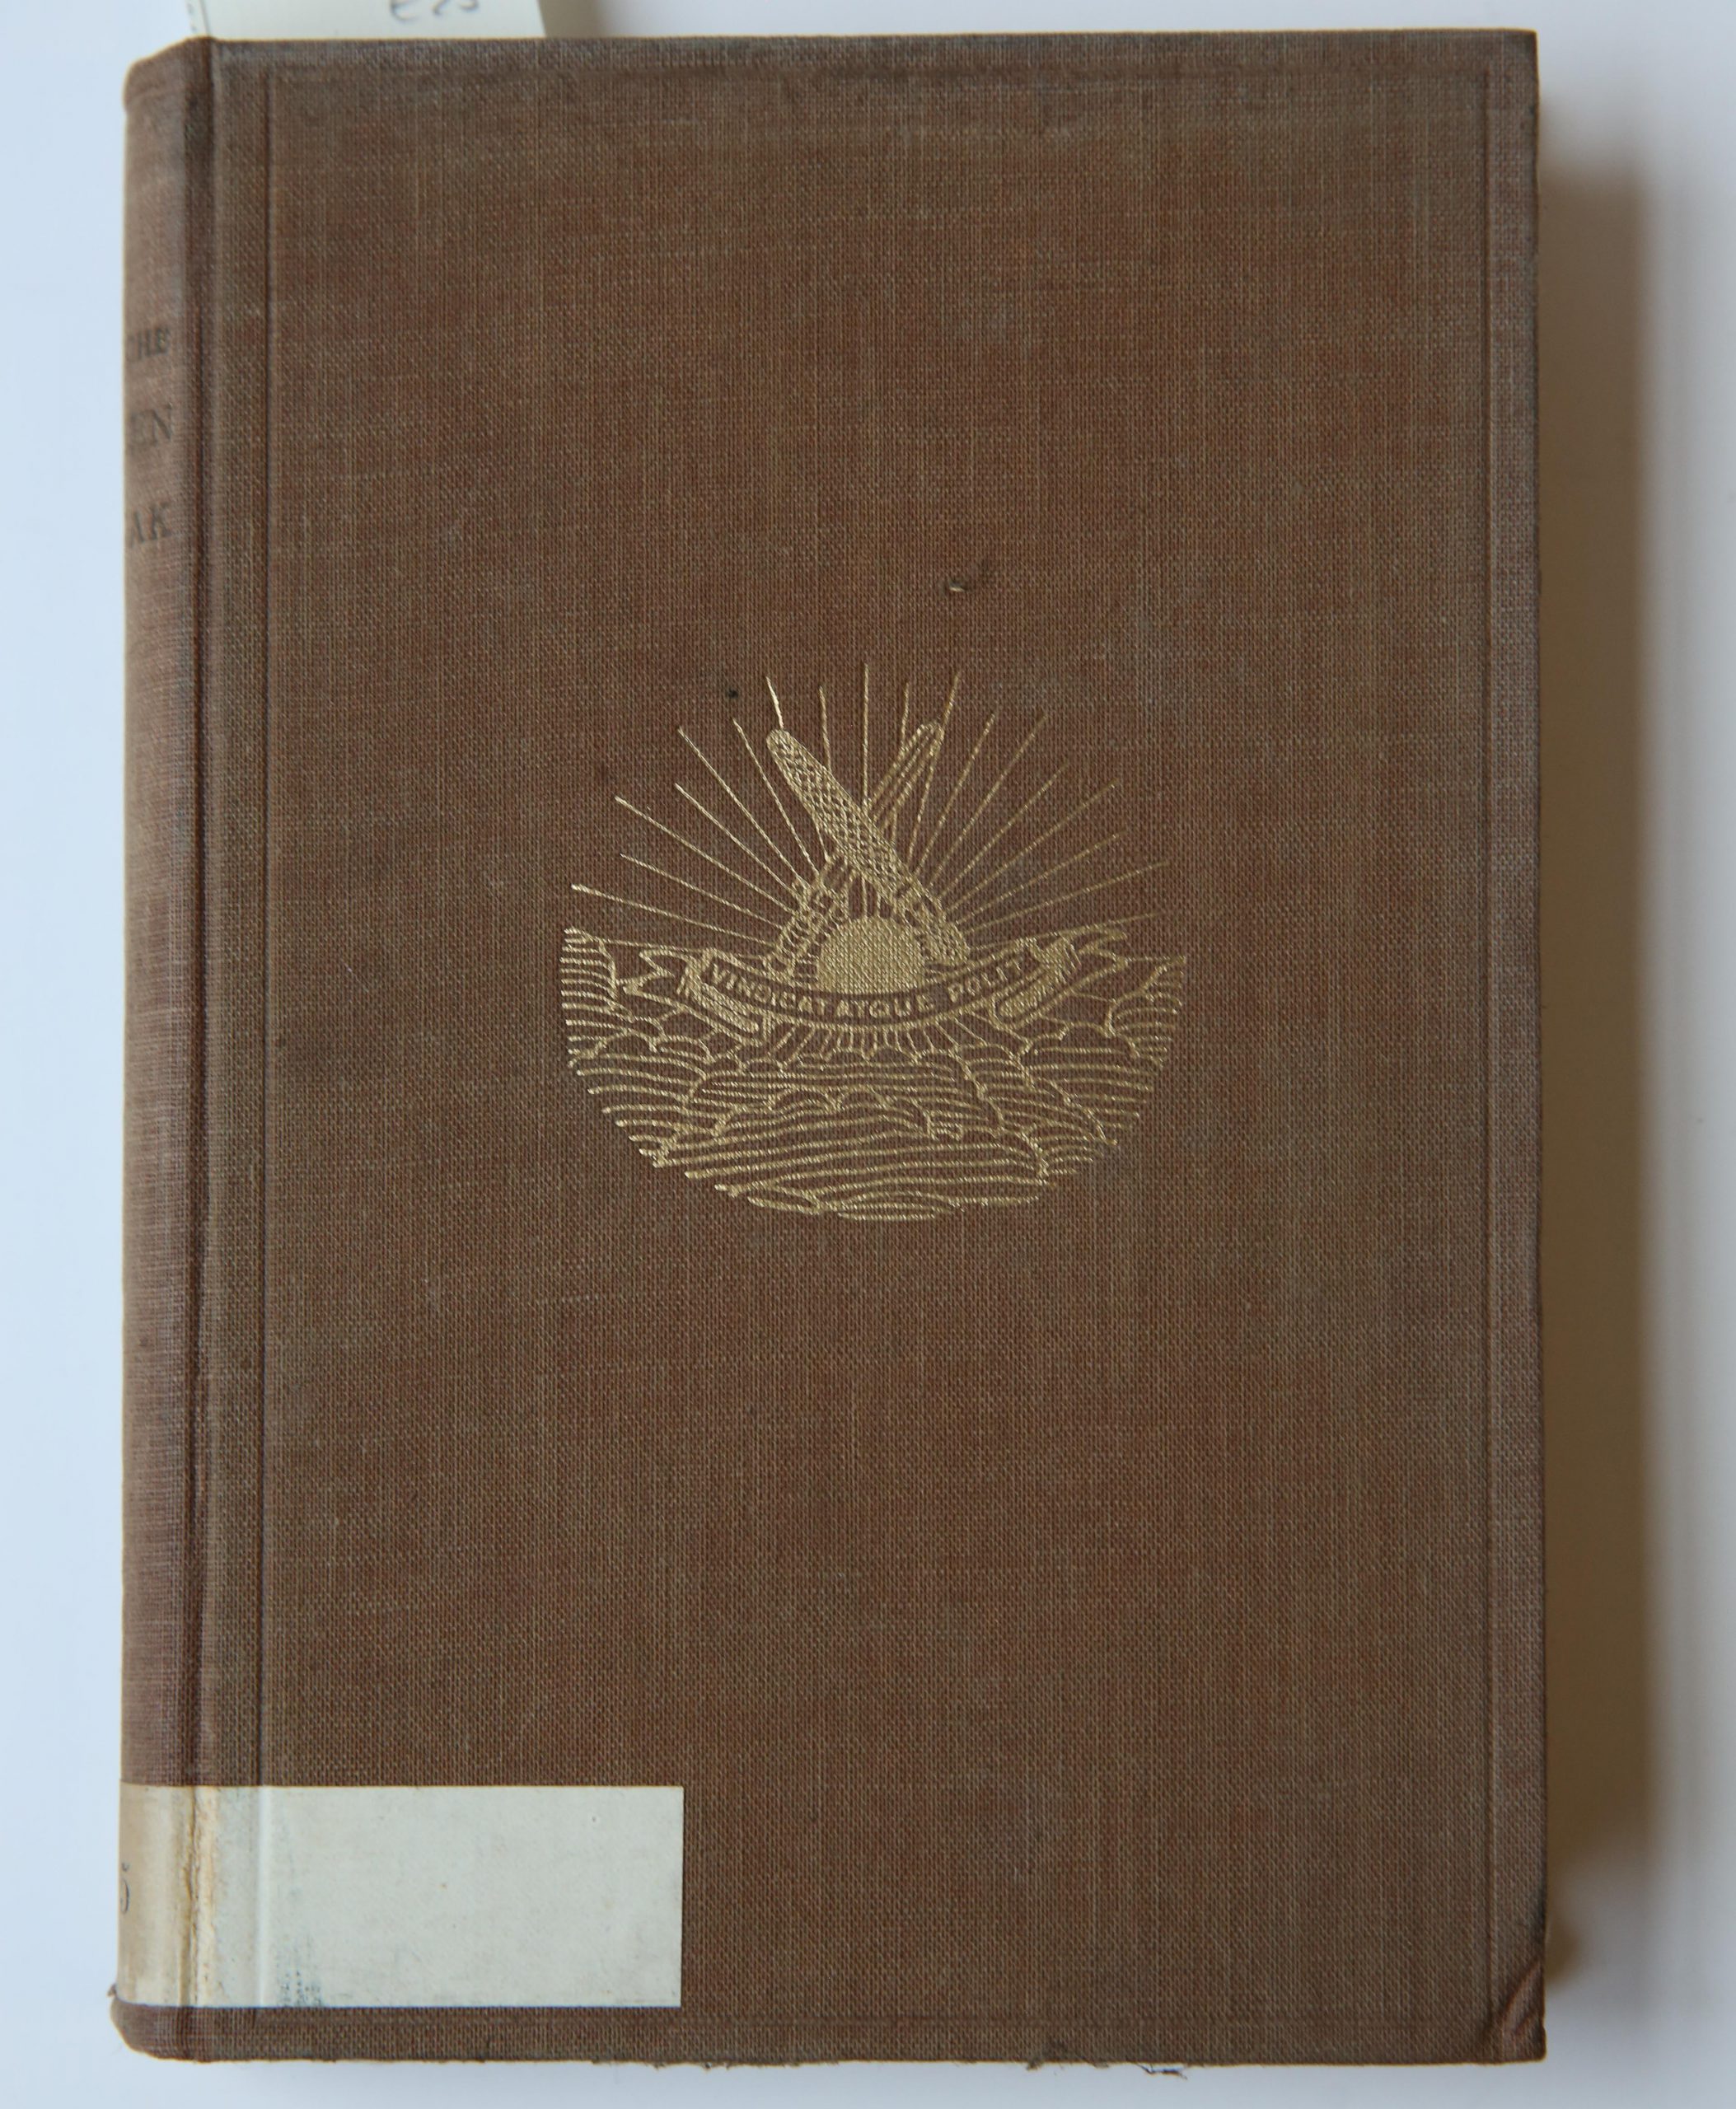 Groninger studenten Almanak voor het jaar 1926, Groningsch Studentencorps Vindicat atque Polit, M. De Waal Groningen 1925, 271 pp. Text in Dutch.